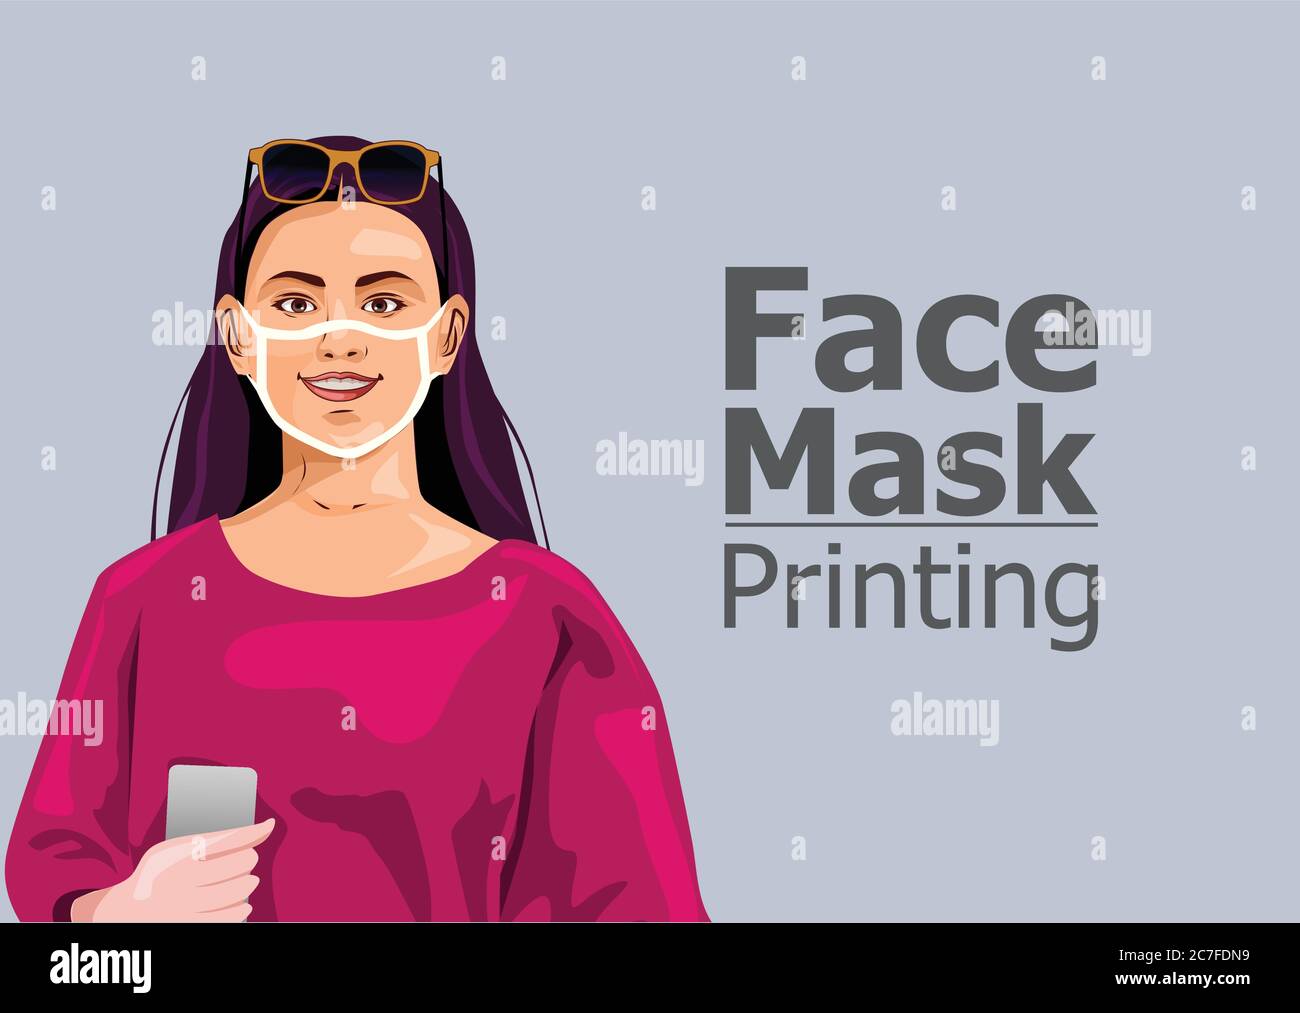 Gesichtsmaske. Drucken Sie das Designkonzept auf wiederverwendbare Gesichtsschutzmasken. Unterhaltung während Coronavirus Quarantäne. Frau trägt gedruckte Gesichtsmaske Stock Vektor